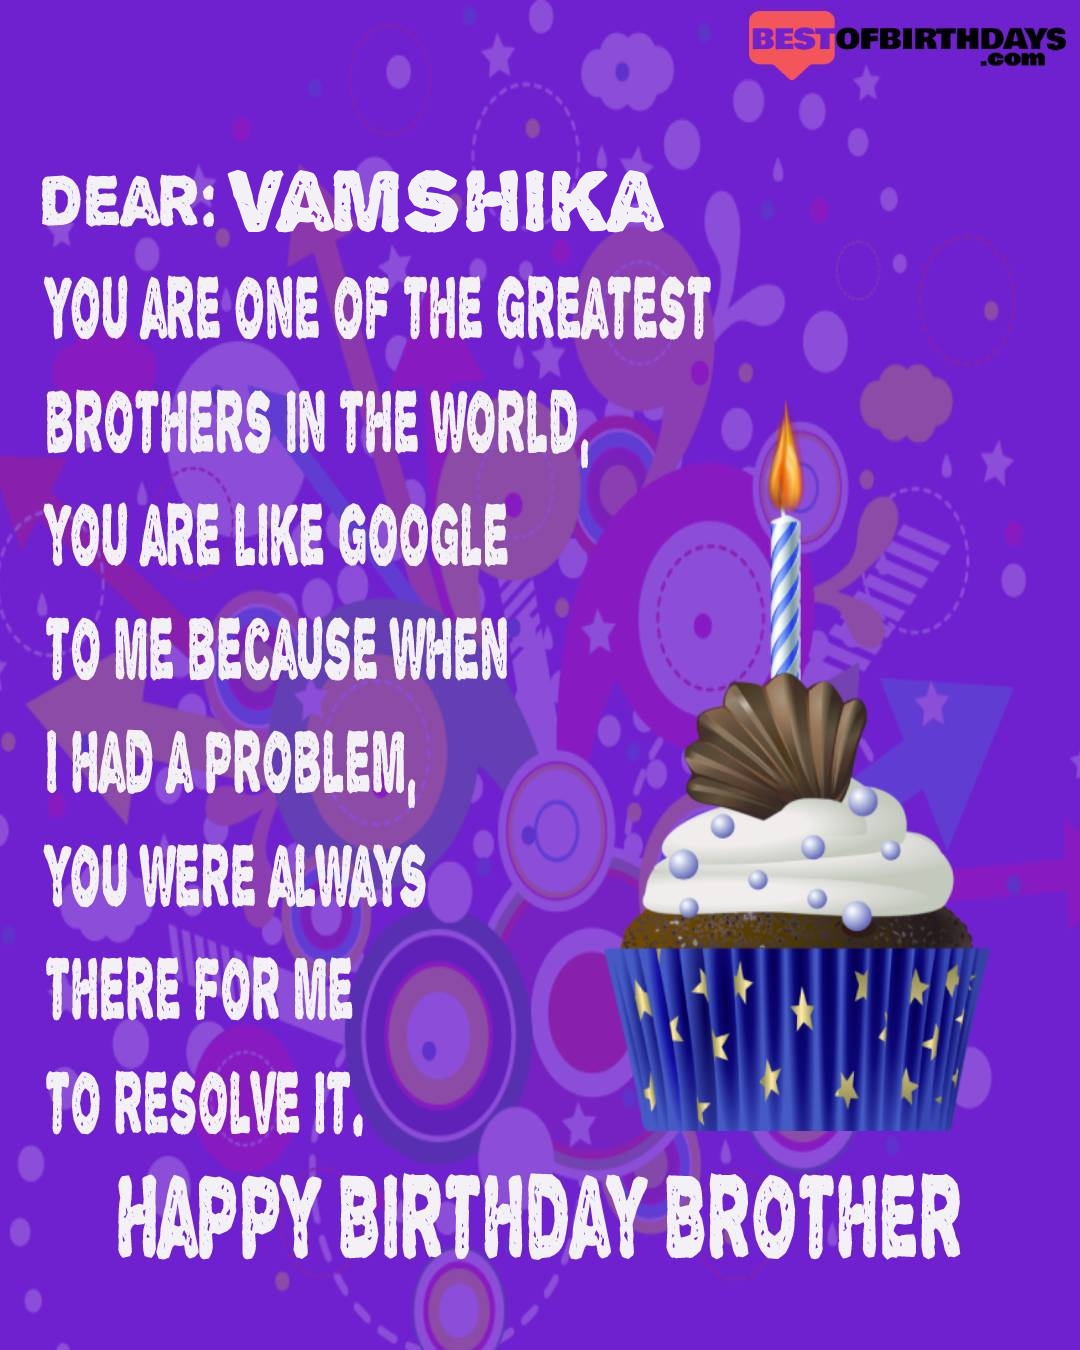 Happy birthday vamshika bhai brother bro